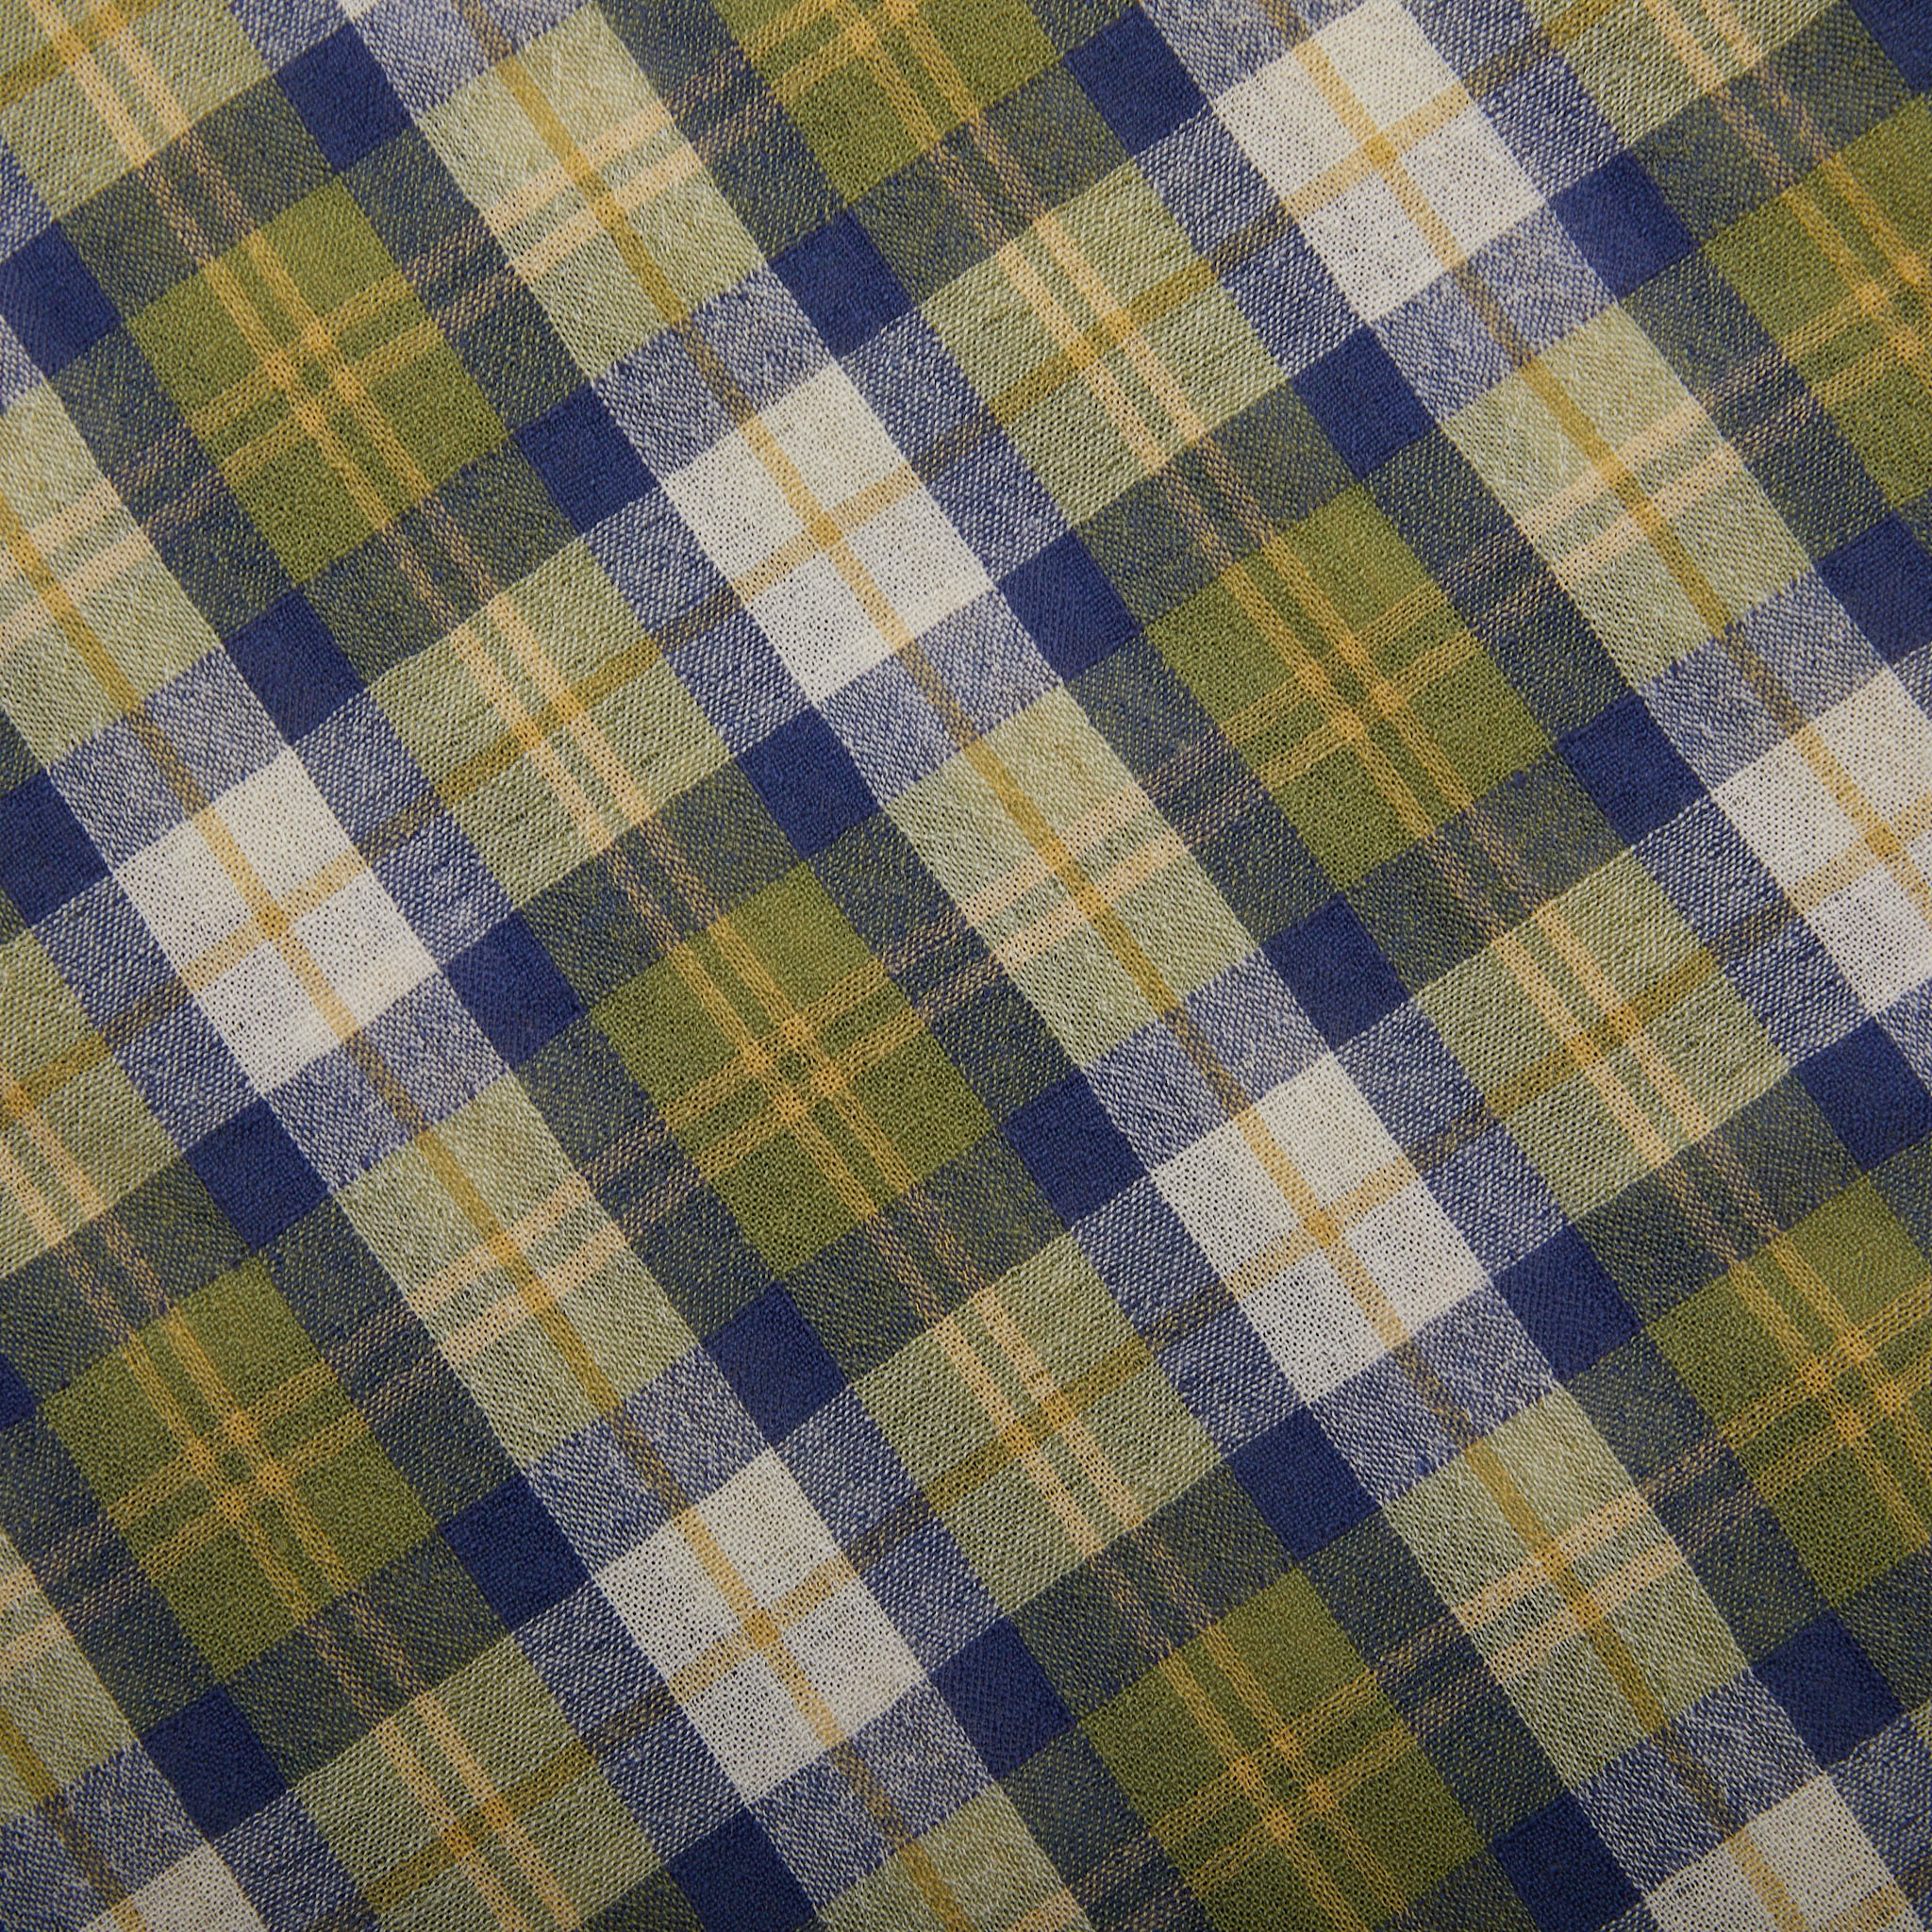 Tablecloth No. 11